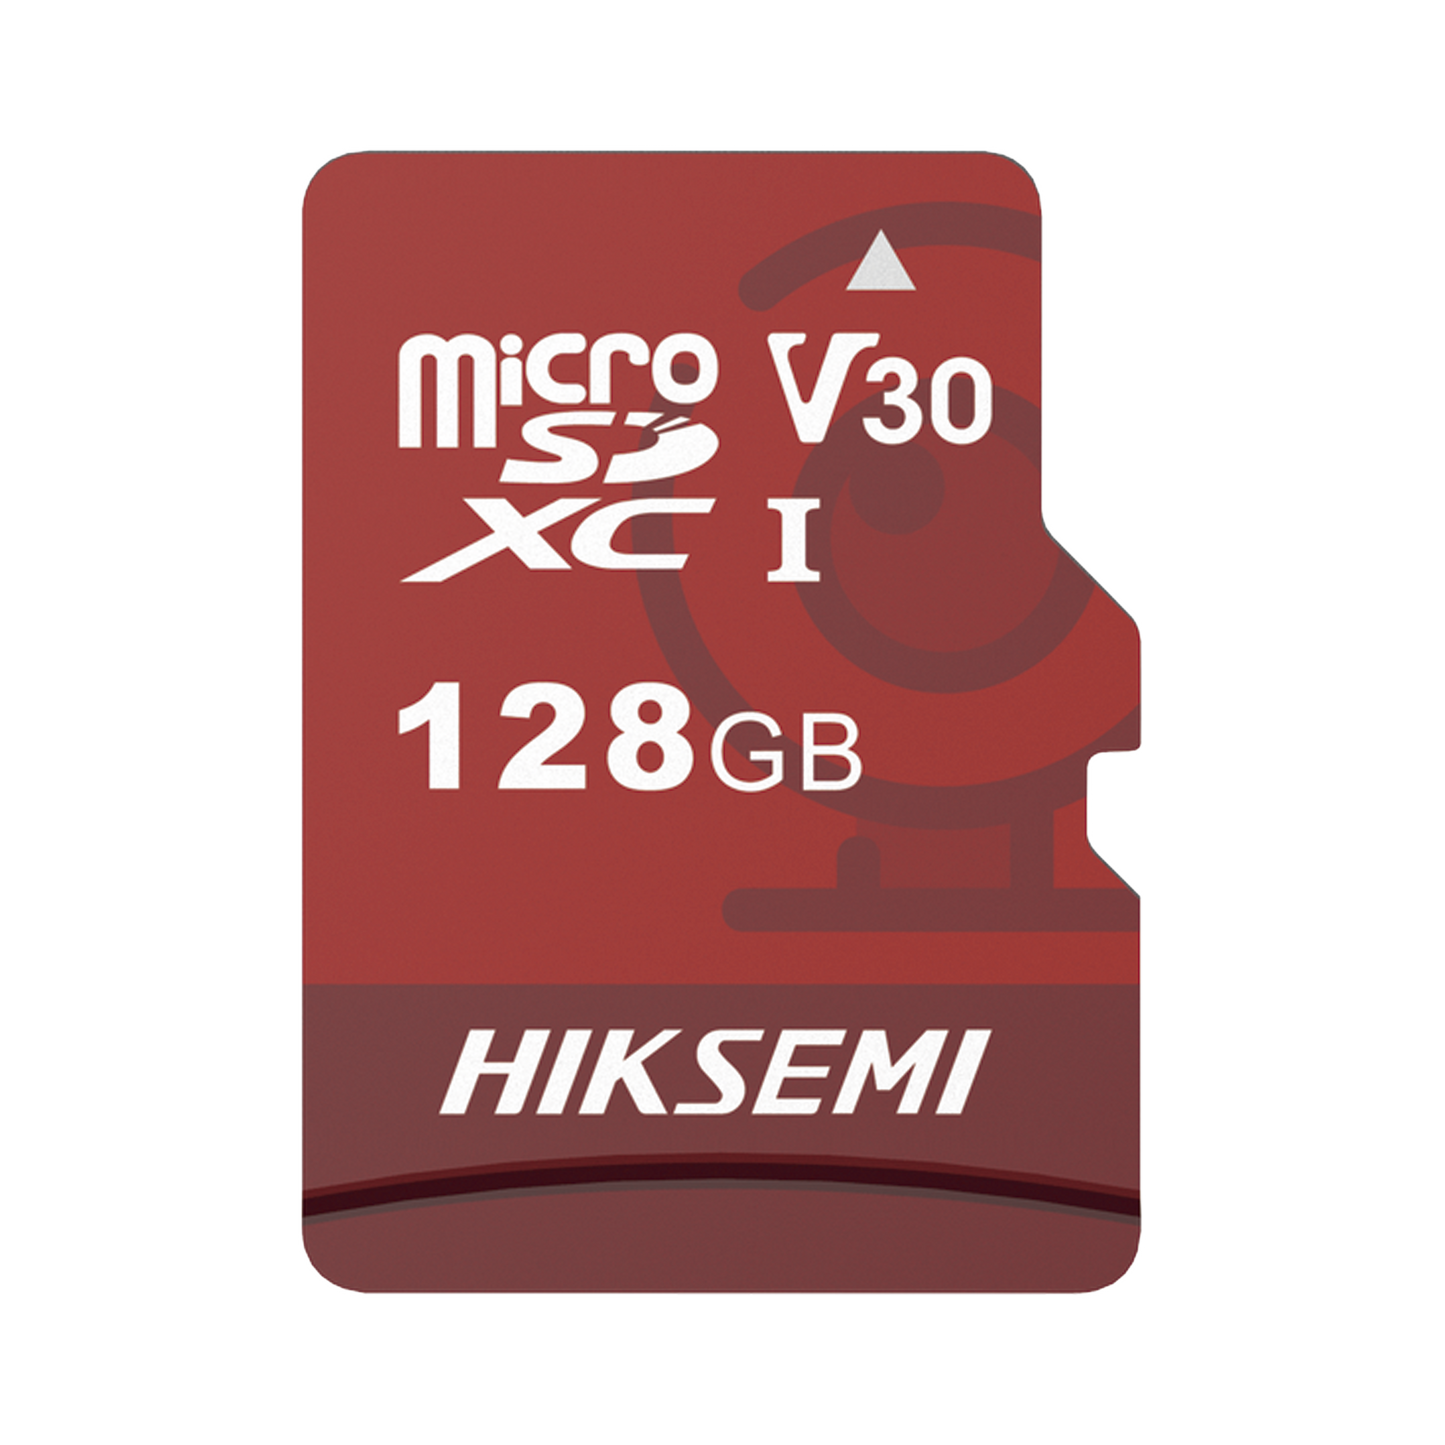 Memoria microSD / Clase 10 de 128 GB / Especializada Para Videovigilancia (Uso 24/7) / Compatibles con cámaras HIKVISION y Otras Marcas / 95 MB/s Lectura / 50 MB/s Escritura